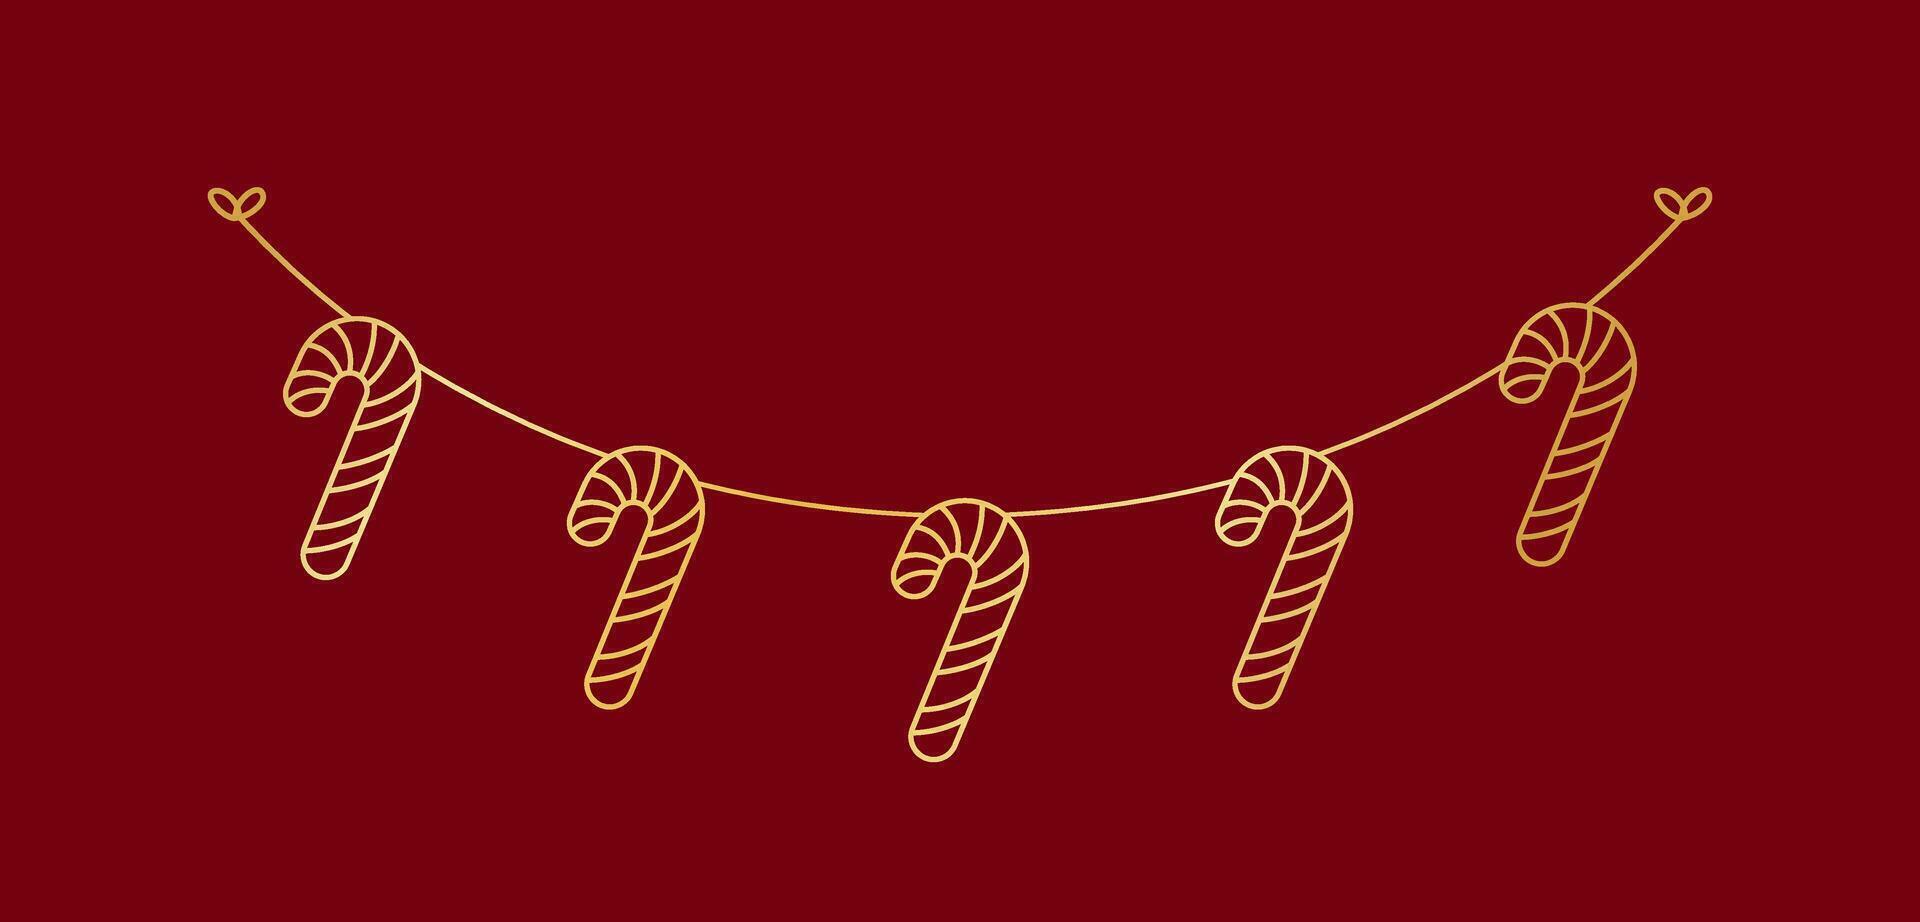 oro caramelo caña guirnalda garabatear línea Arte vector ilustración, Navidad gráficos festivo invierno fiesta temporada verderón